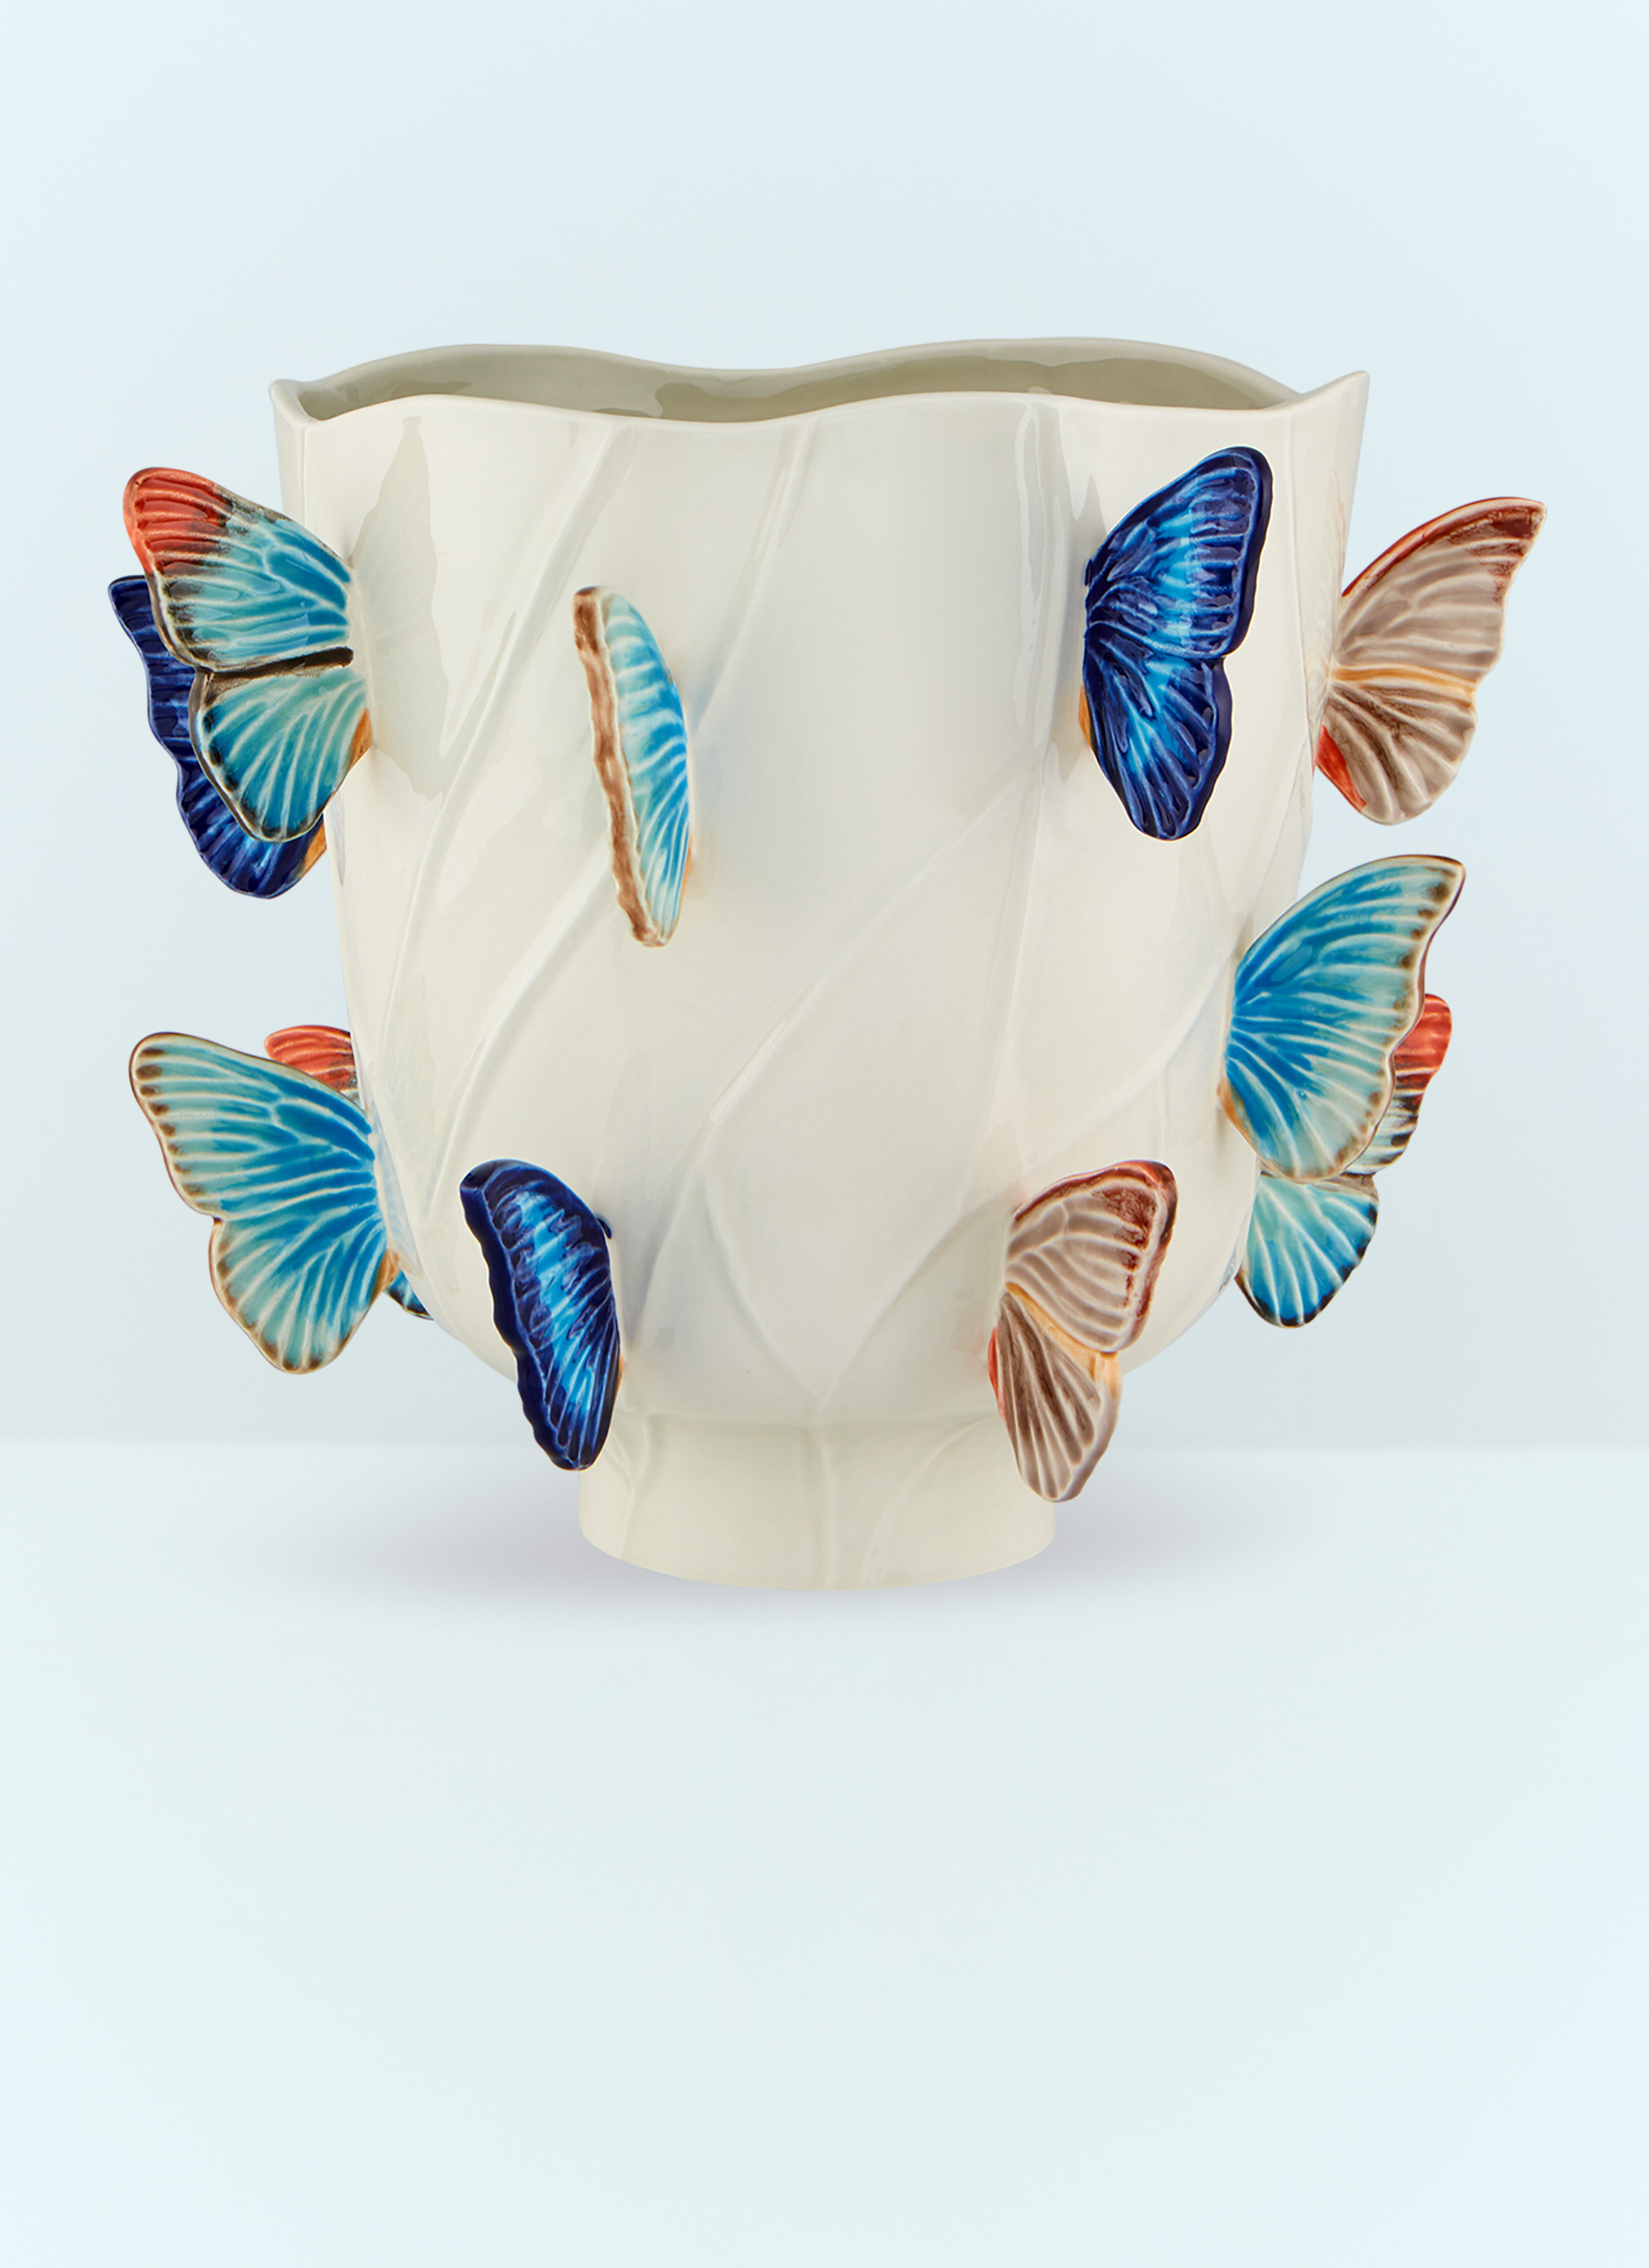 Les Ottomans Cloudy Butterflies Large Vase Clear wps0691229